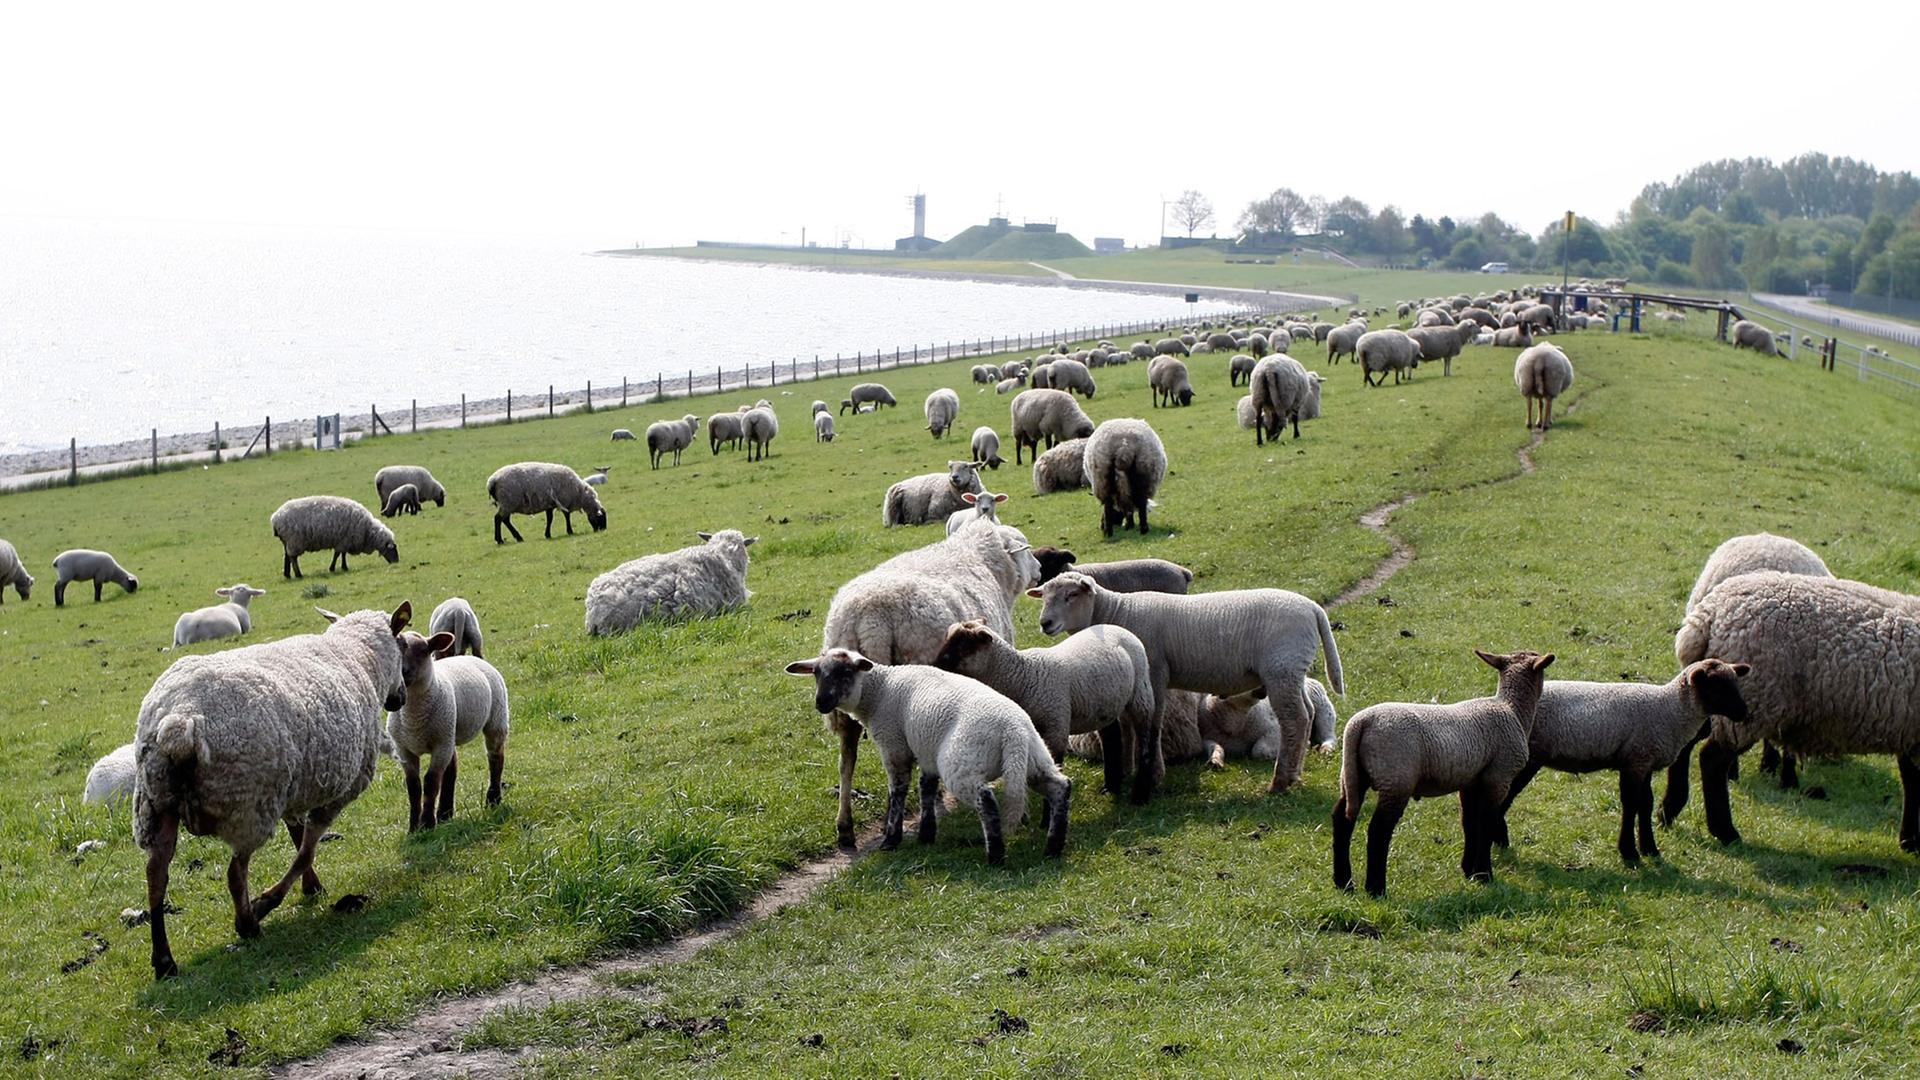 Schafe sind für die Deichsicherheit unverzichtbar. Entlang der Küstenstraße "Am Tiefen Fahrwasser" bei Wilhelmshaven weiden fast überall Schafe. Etwa 270 Schäfereien tragen in Niedersachsen und Schleswig-Holstein zum Erhalt der Deiche und damit zum Schutz einer Landesfläche von insgesamt 4700 km² bei. Die Schafe halten das Gras kurz und treten auch den Boden fest. Löcher durch Maulwürfe oder Wühlmäuse werden von den Schafen zugetreten.